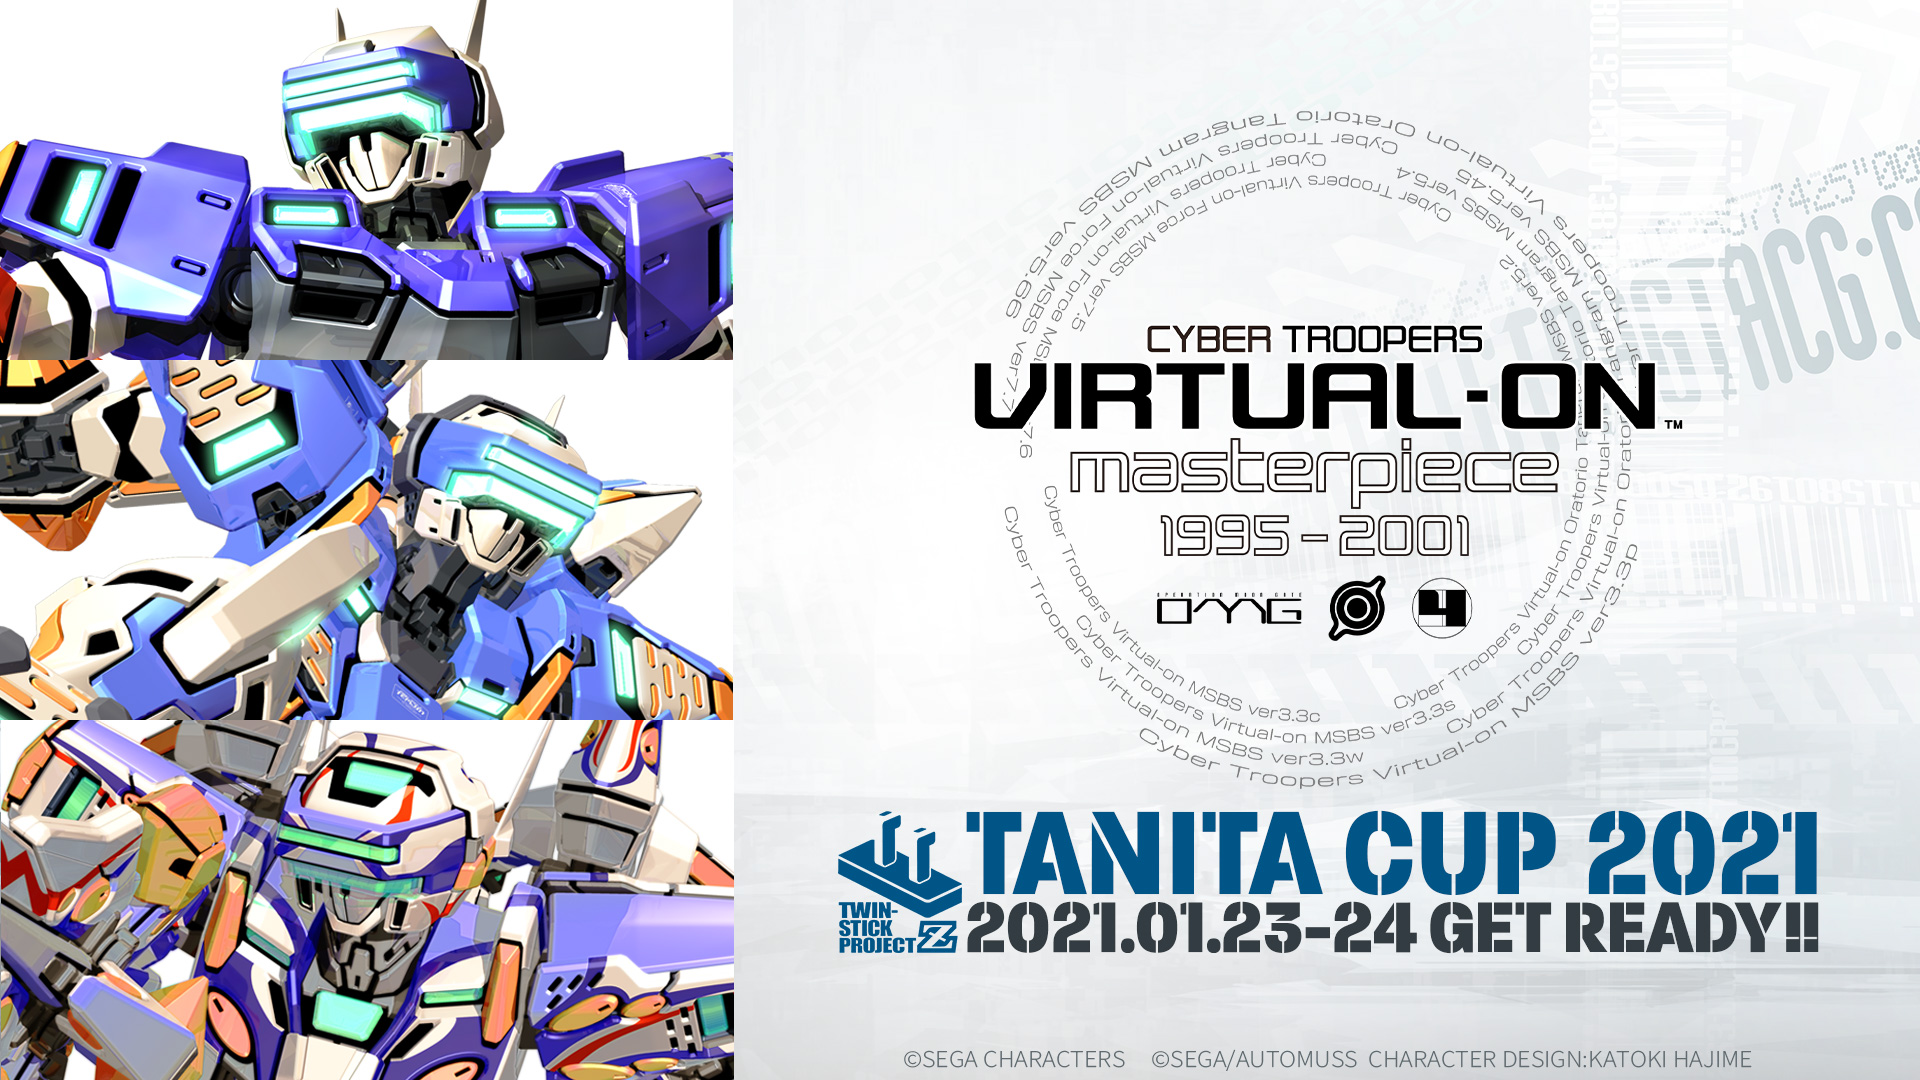 タニタが主催 電脳戦機バーチャロン のオンライン大会が開催決定 Gamerzclip